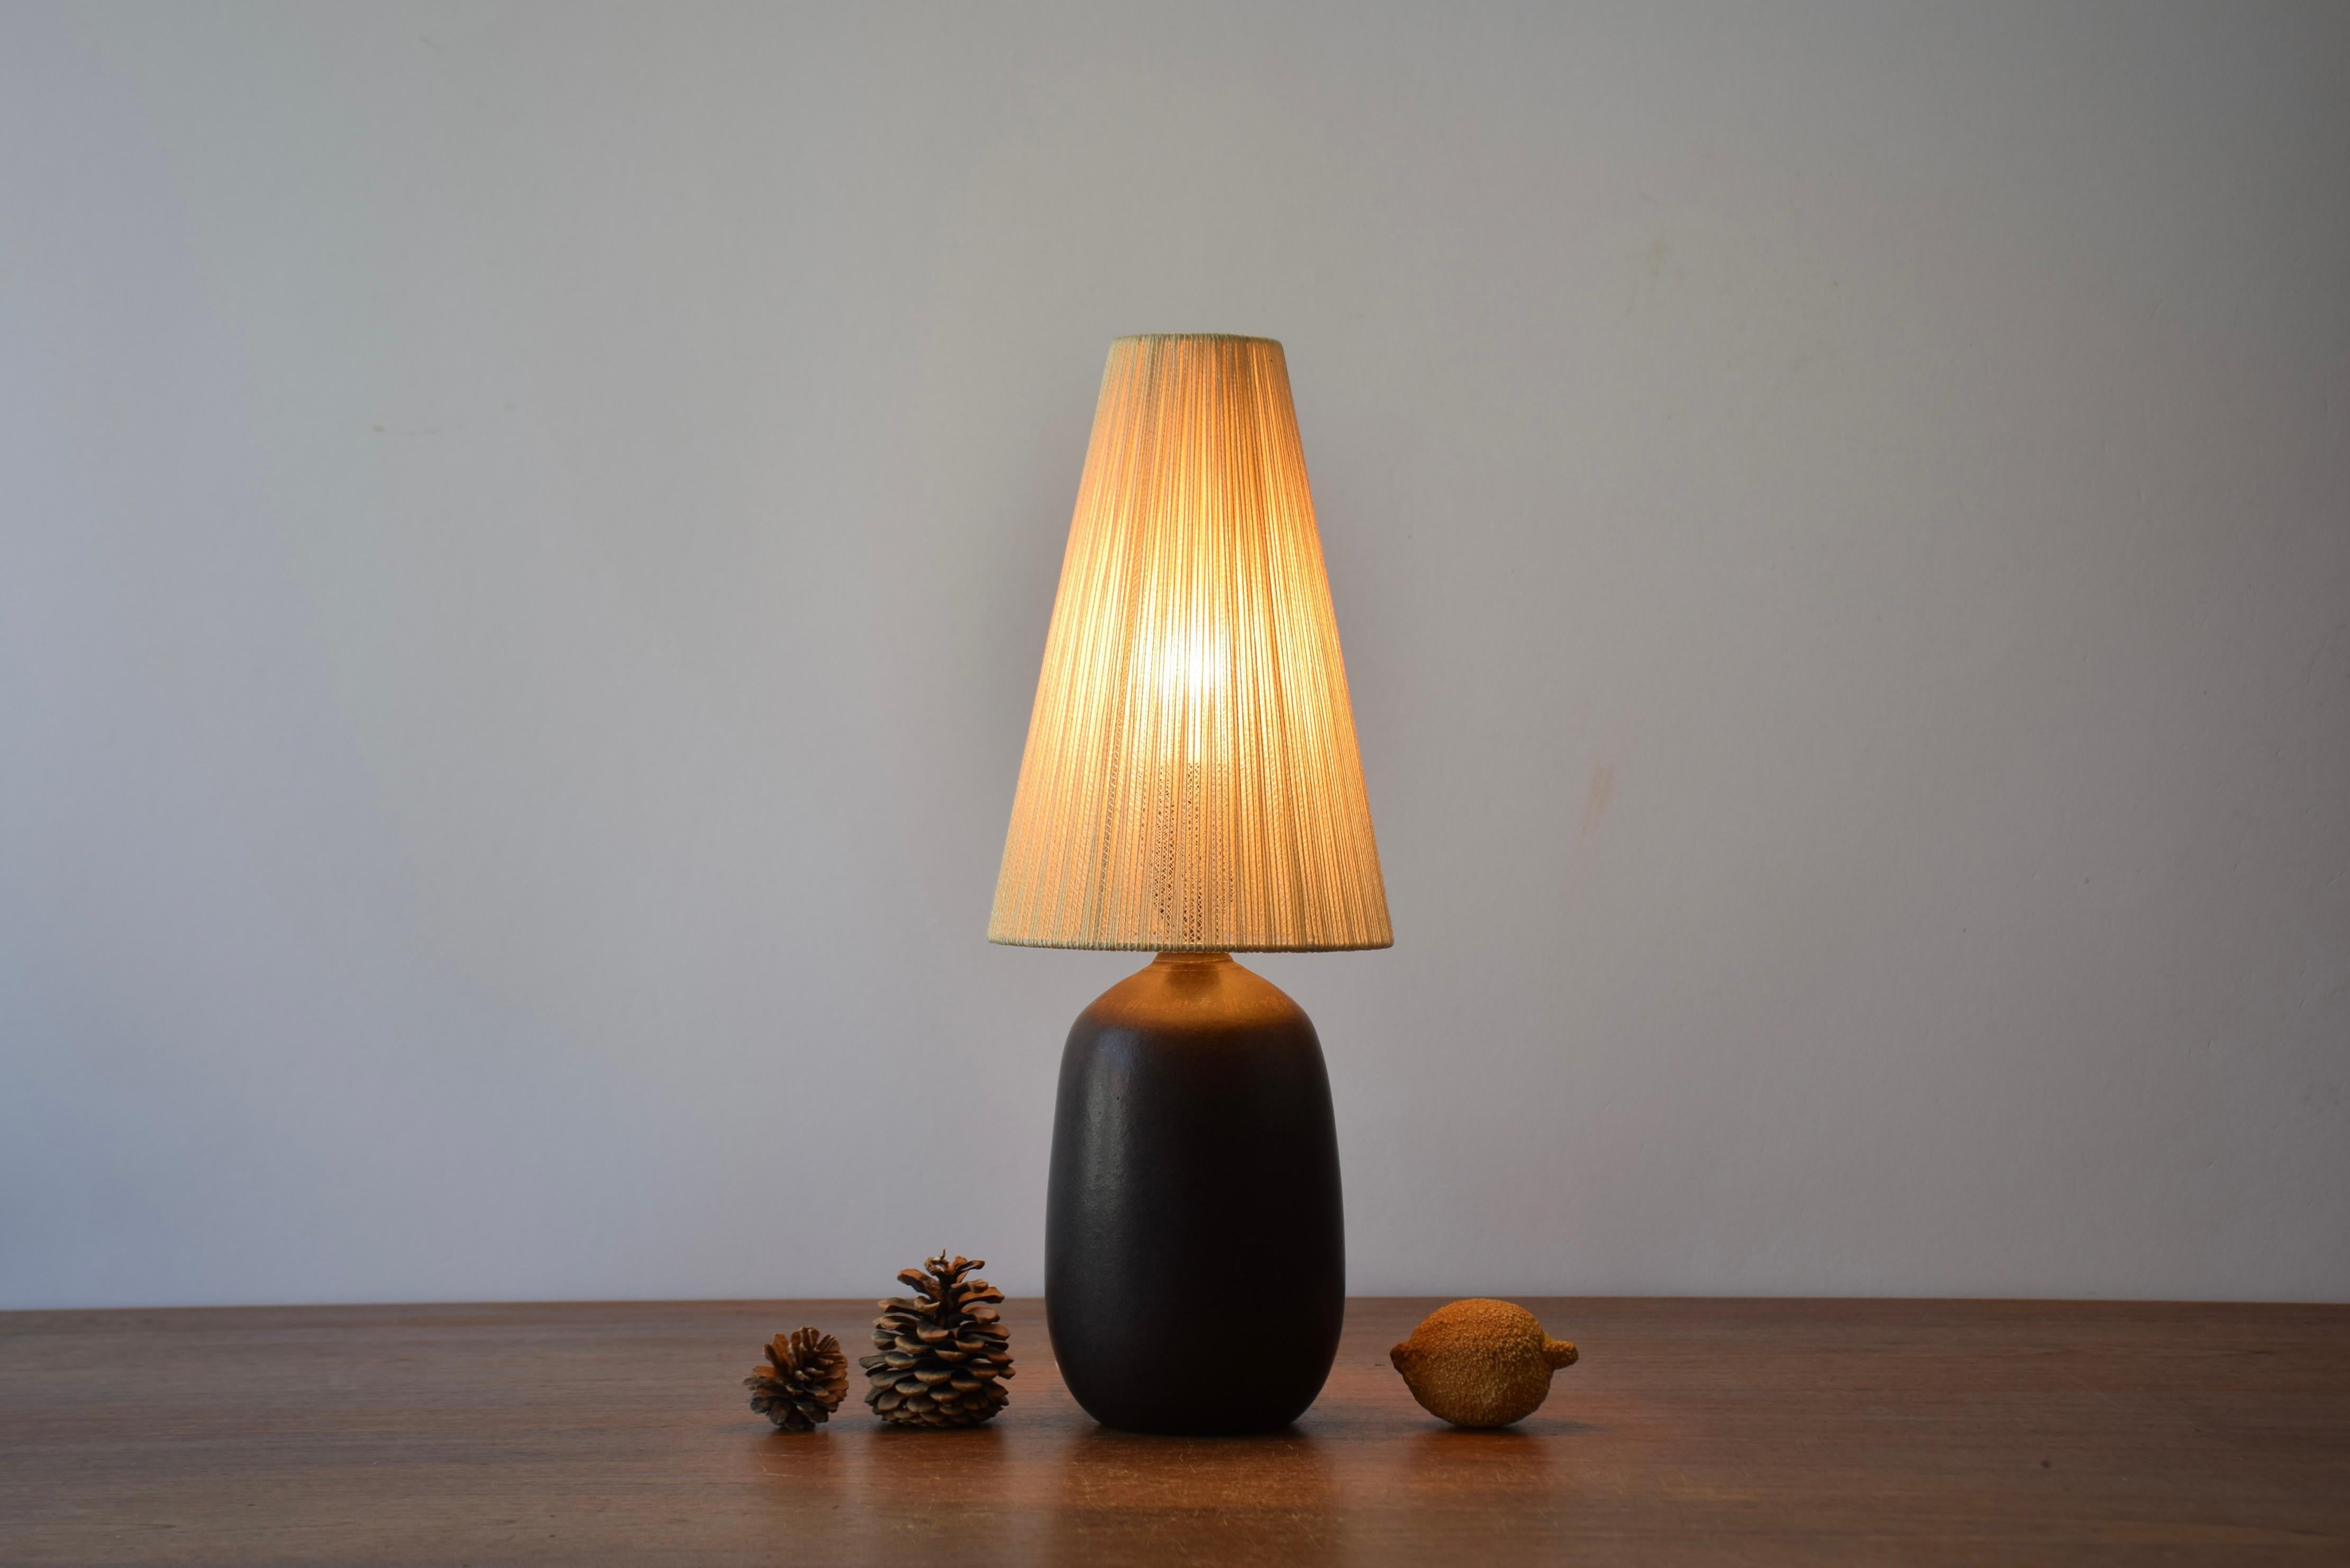 Kleine Keramik-Tischlampe des schwedischen Designers und Keramikers Agne Aronsson (1924-1990), hergestellt in seinem eigenen Studio in Bjärnum um 1960. 

Die Lampe wird mit einem Vintage-Lampenschirm geliefert, der höchstwahrscheinlich das Original